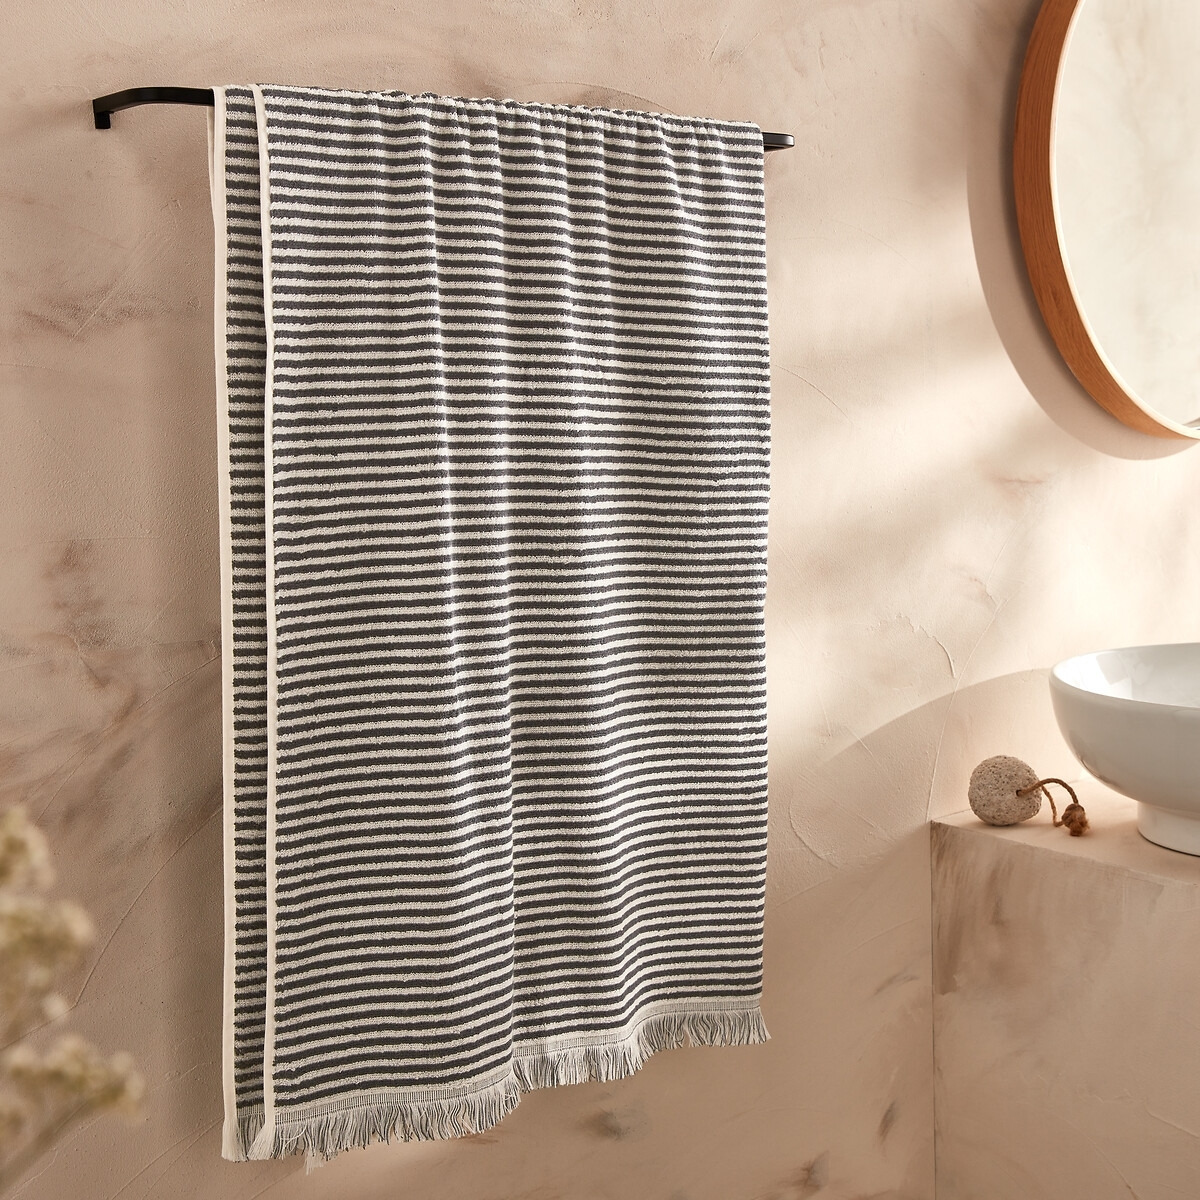 Malo Striped 100% Cotton Bath Sheet - image 1